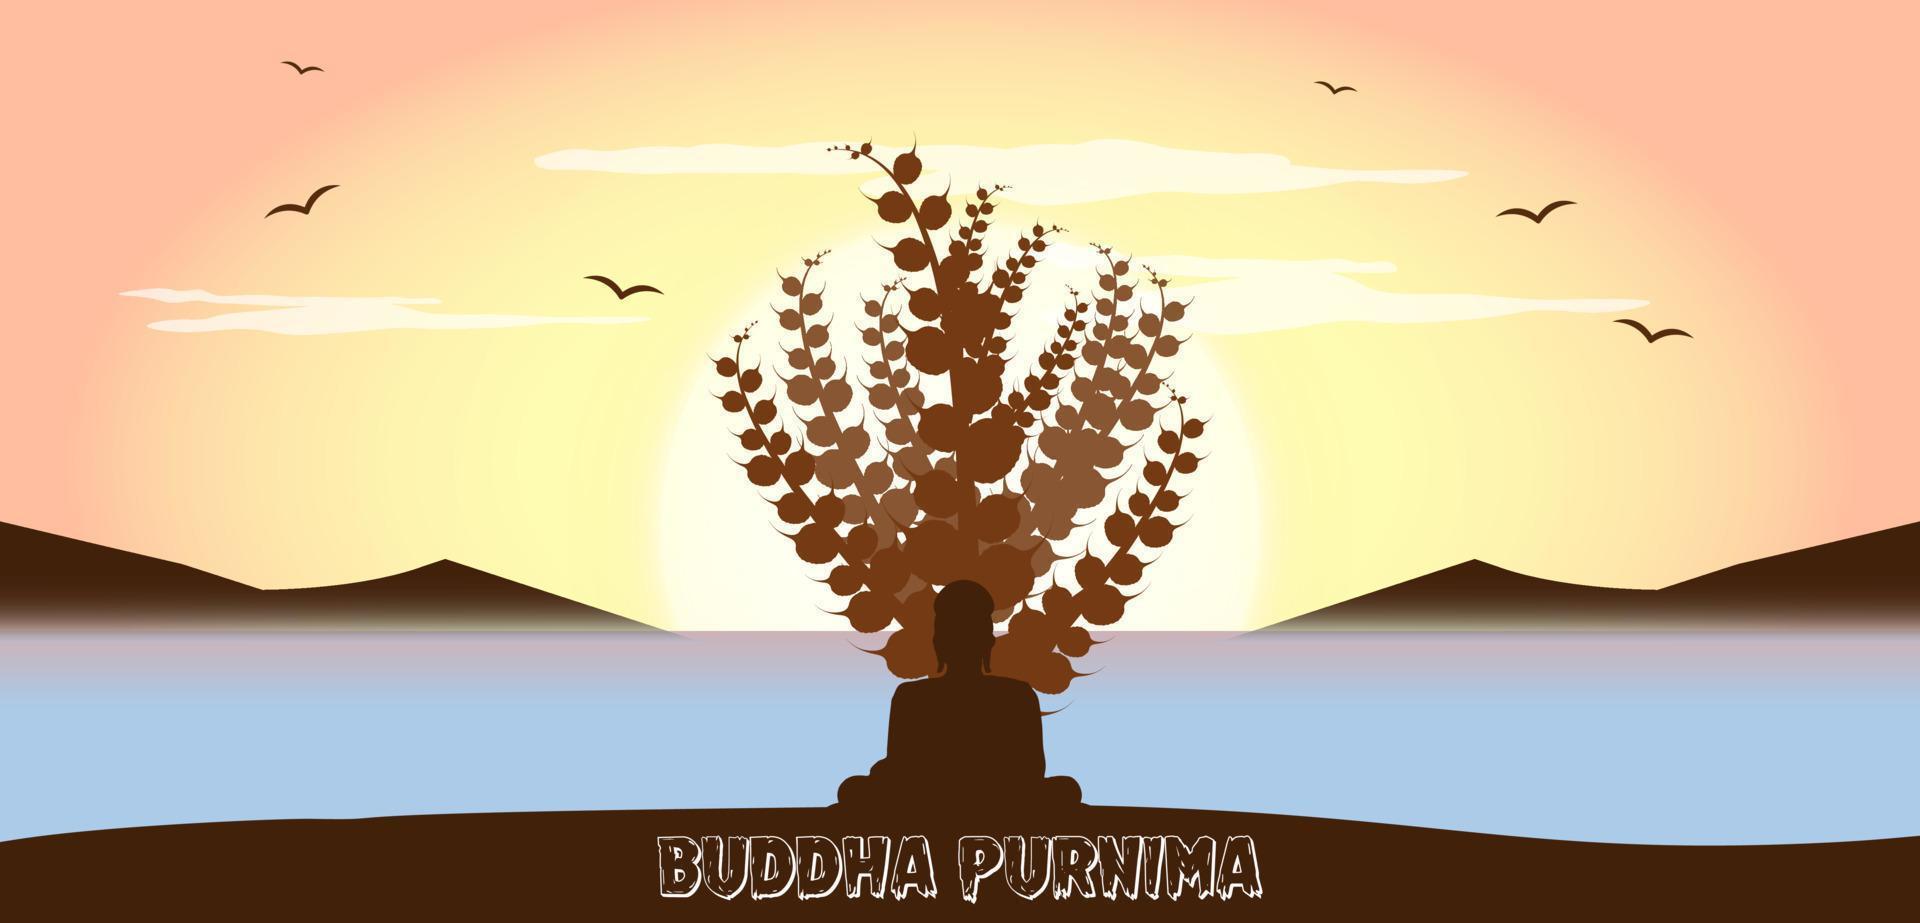 Vector illustration of buddha Purnima